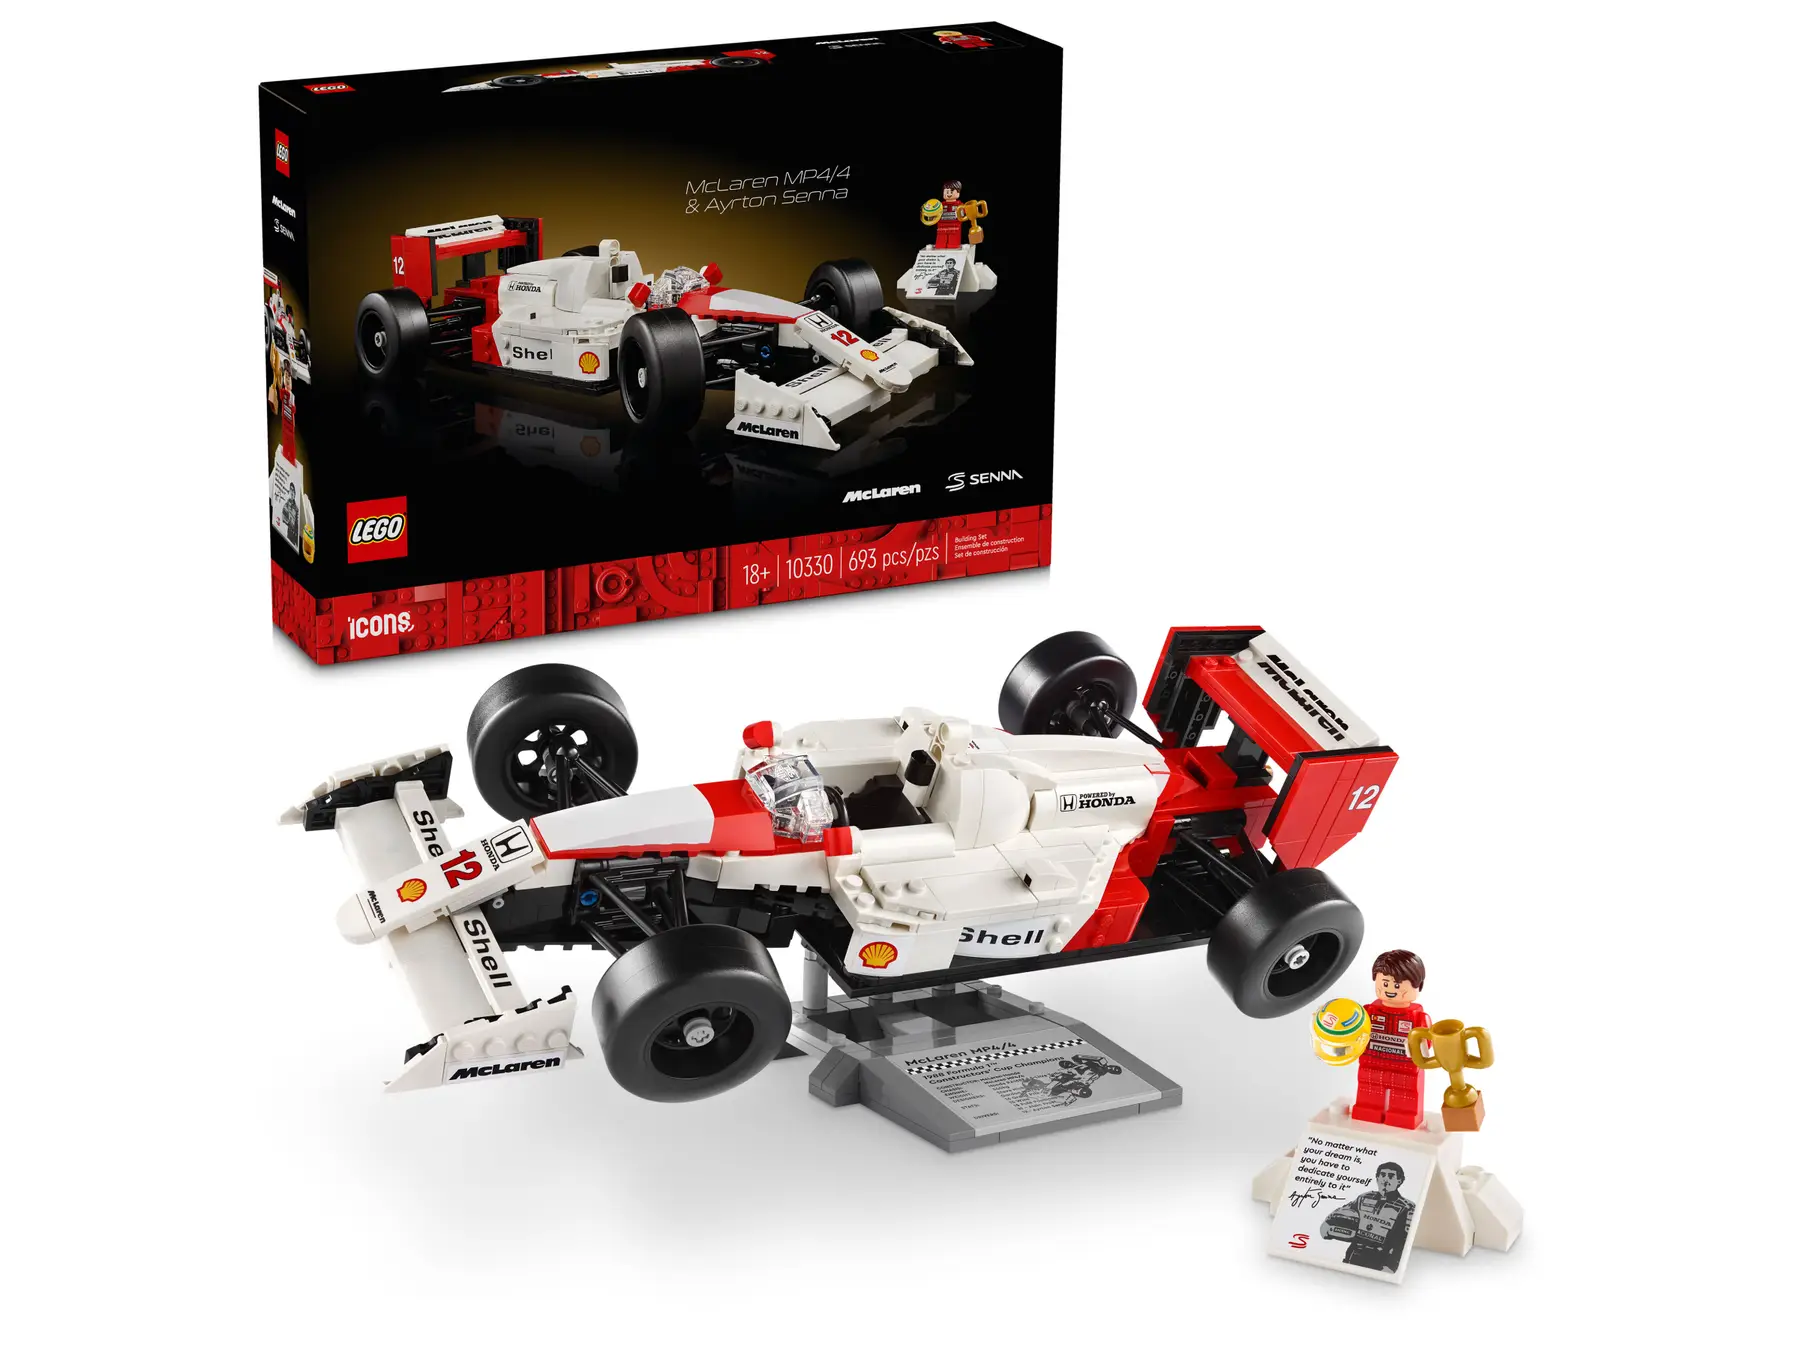 LEGO Icons McLaren MP4/4 ve Ayrton Senna 10330 